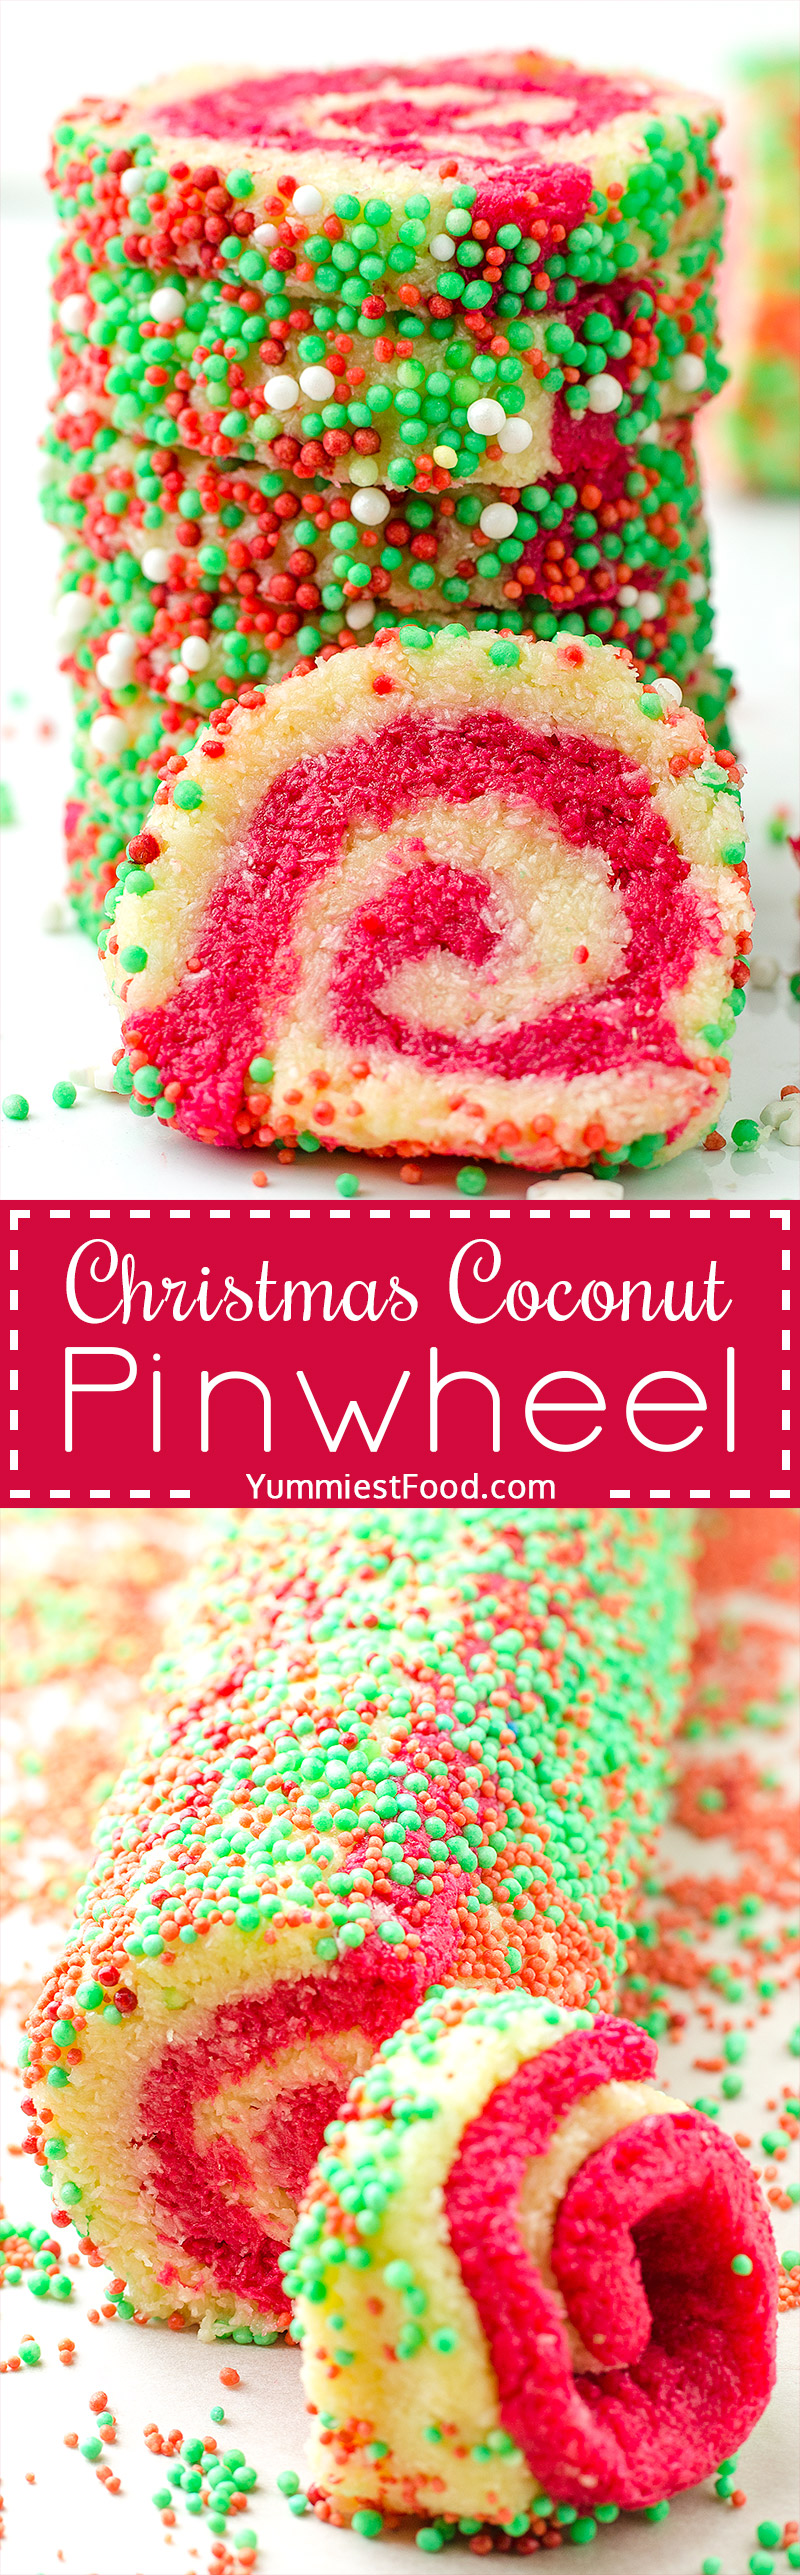 Christmas Coconut Pinwheel No Bake - a super cute and festive no bake dessert